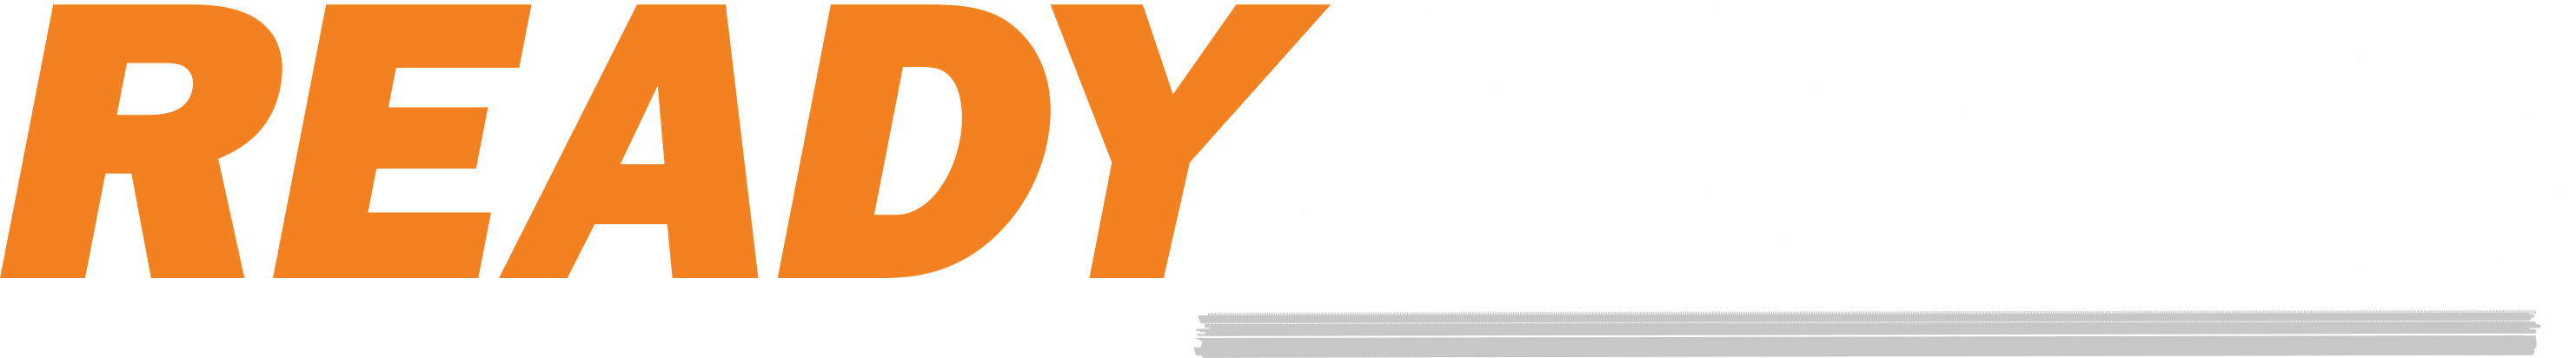 OSCO Safety ReadySeries logo in orange and white